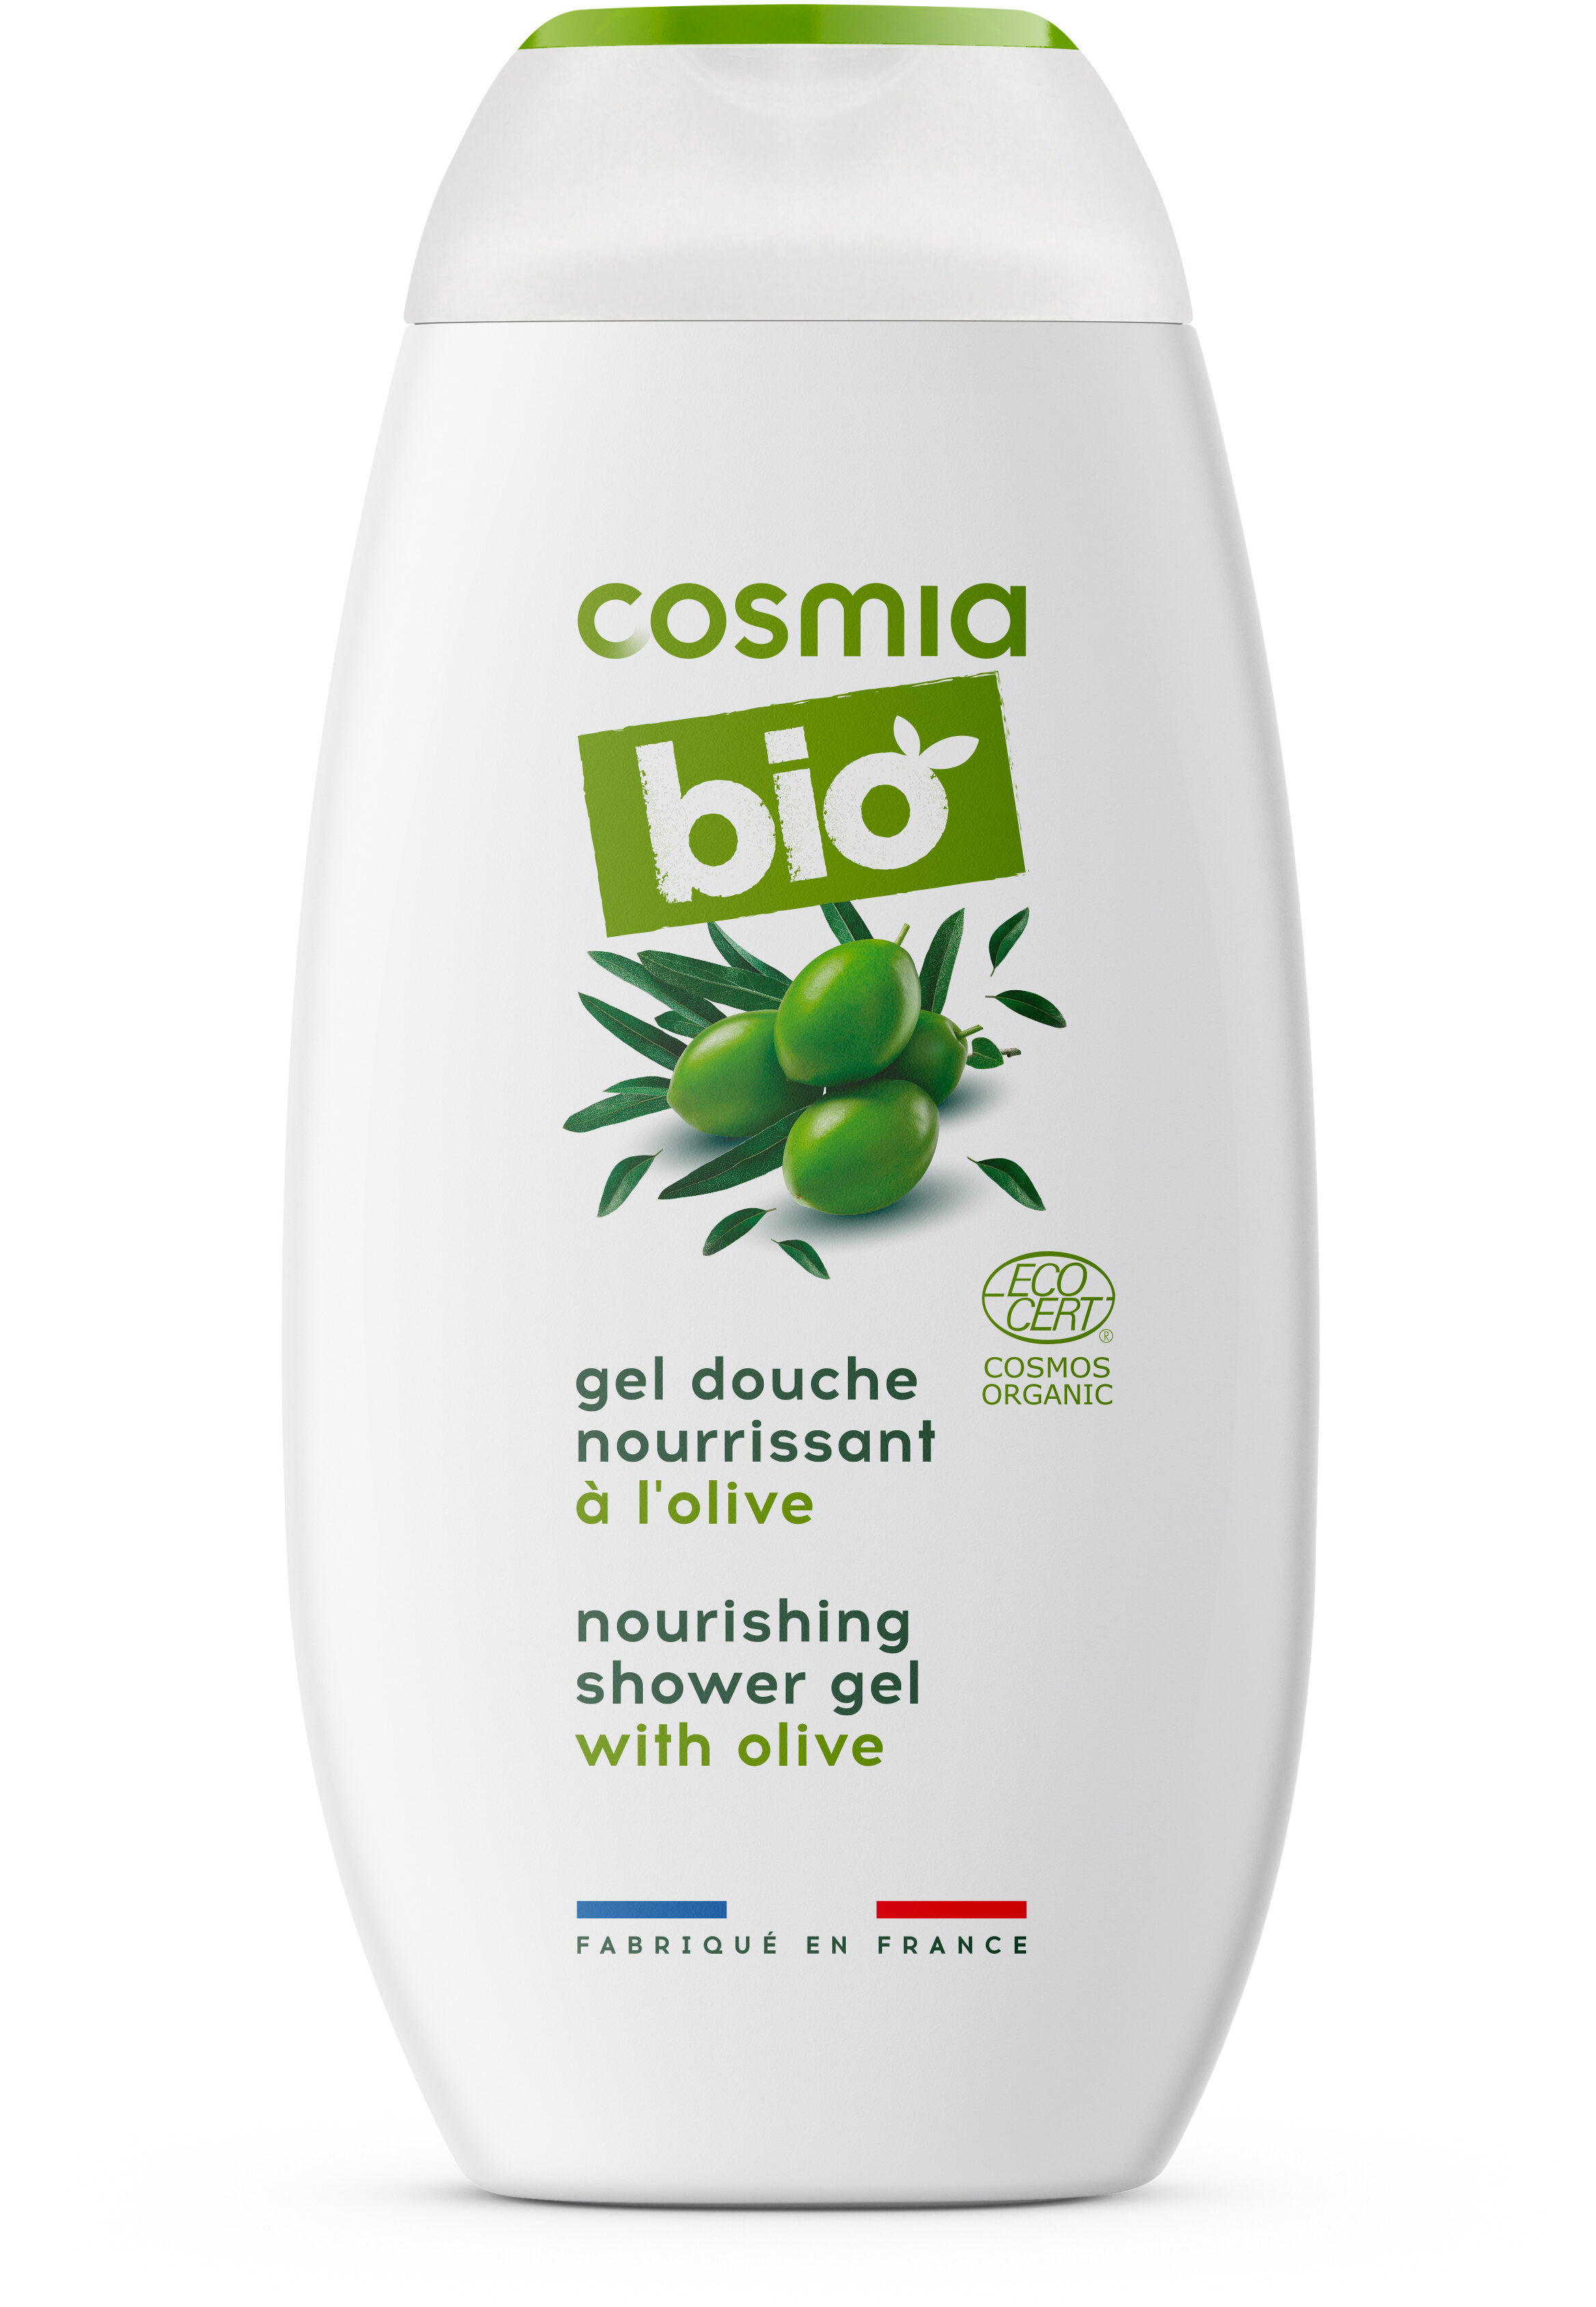 Cosmia bio gel douche nourrissant olive - Product - en